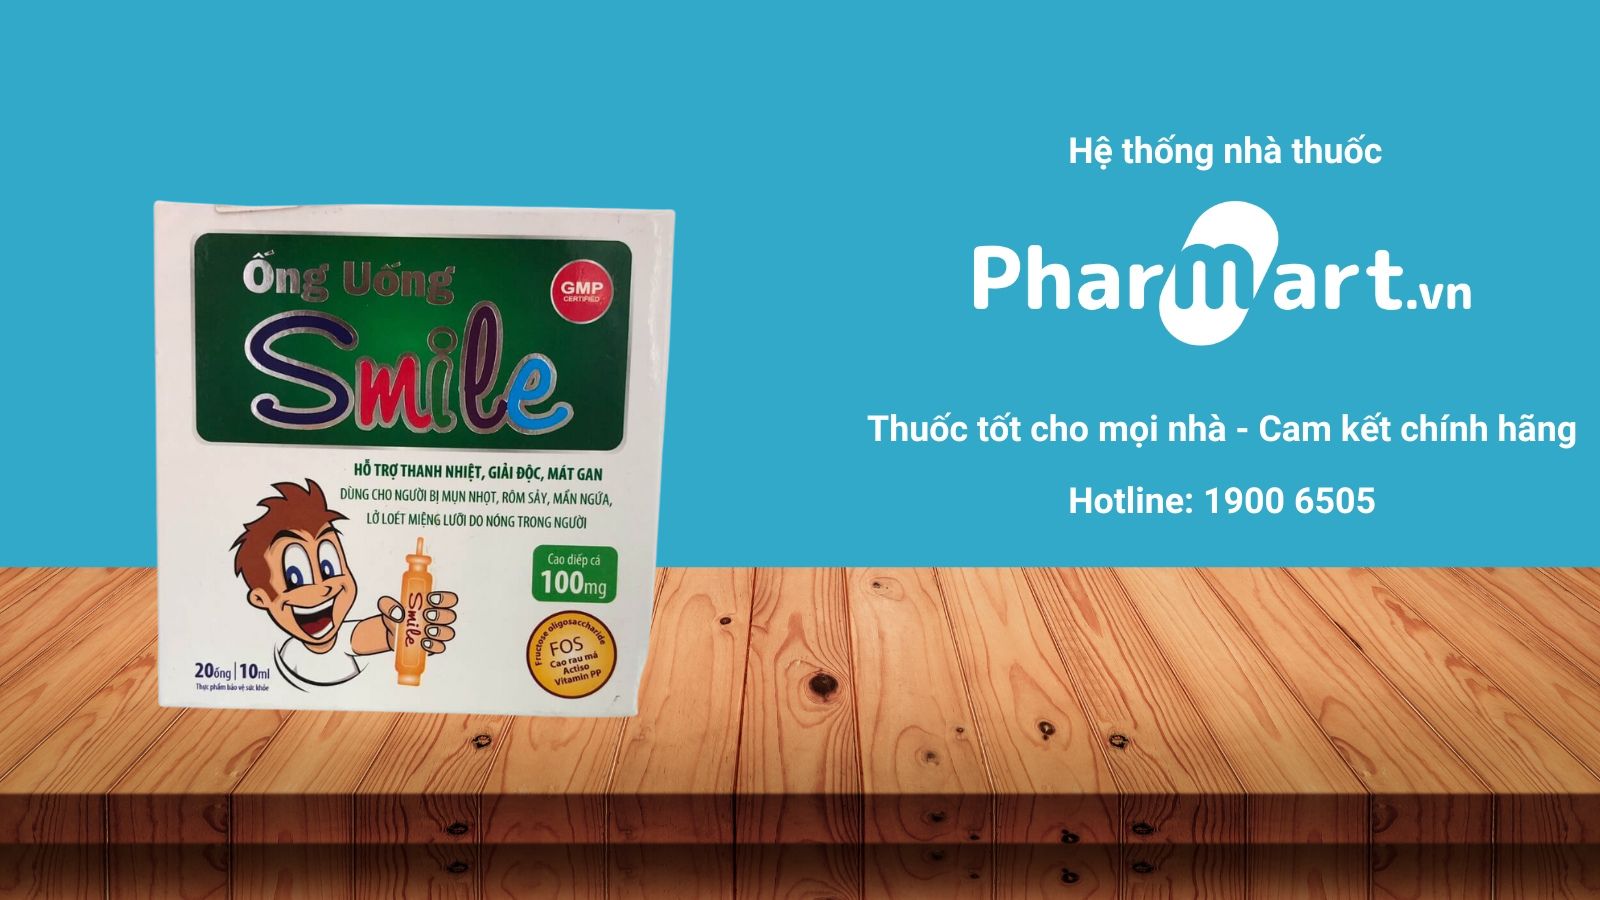 Mua Ống uống thanh nhiệt mát gan Smile chính hãng tại Pharmart.vn